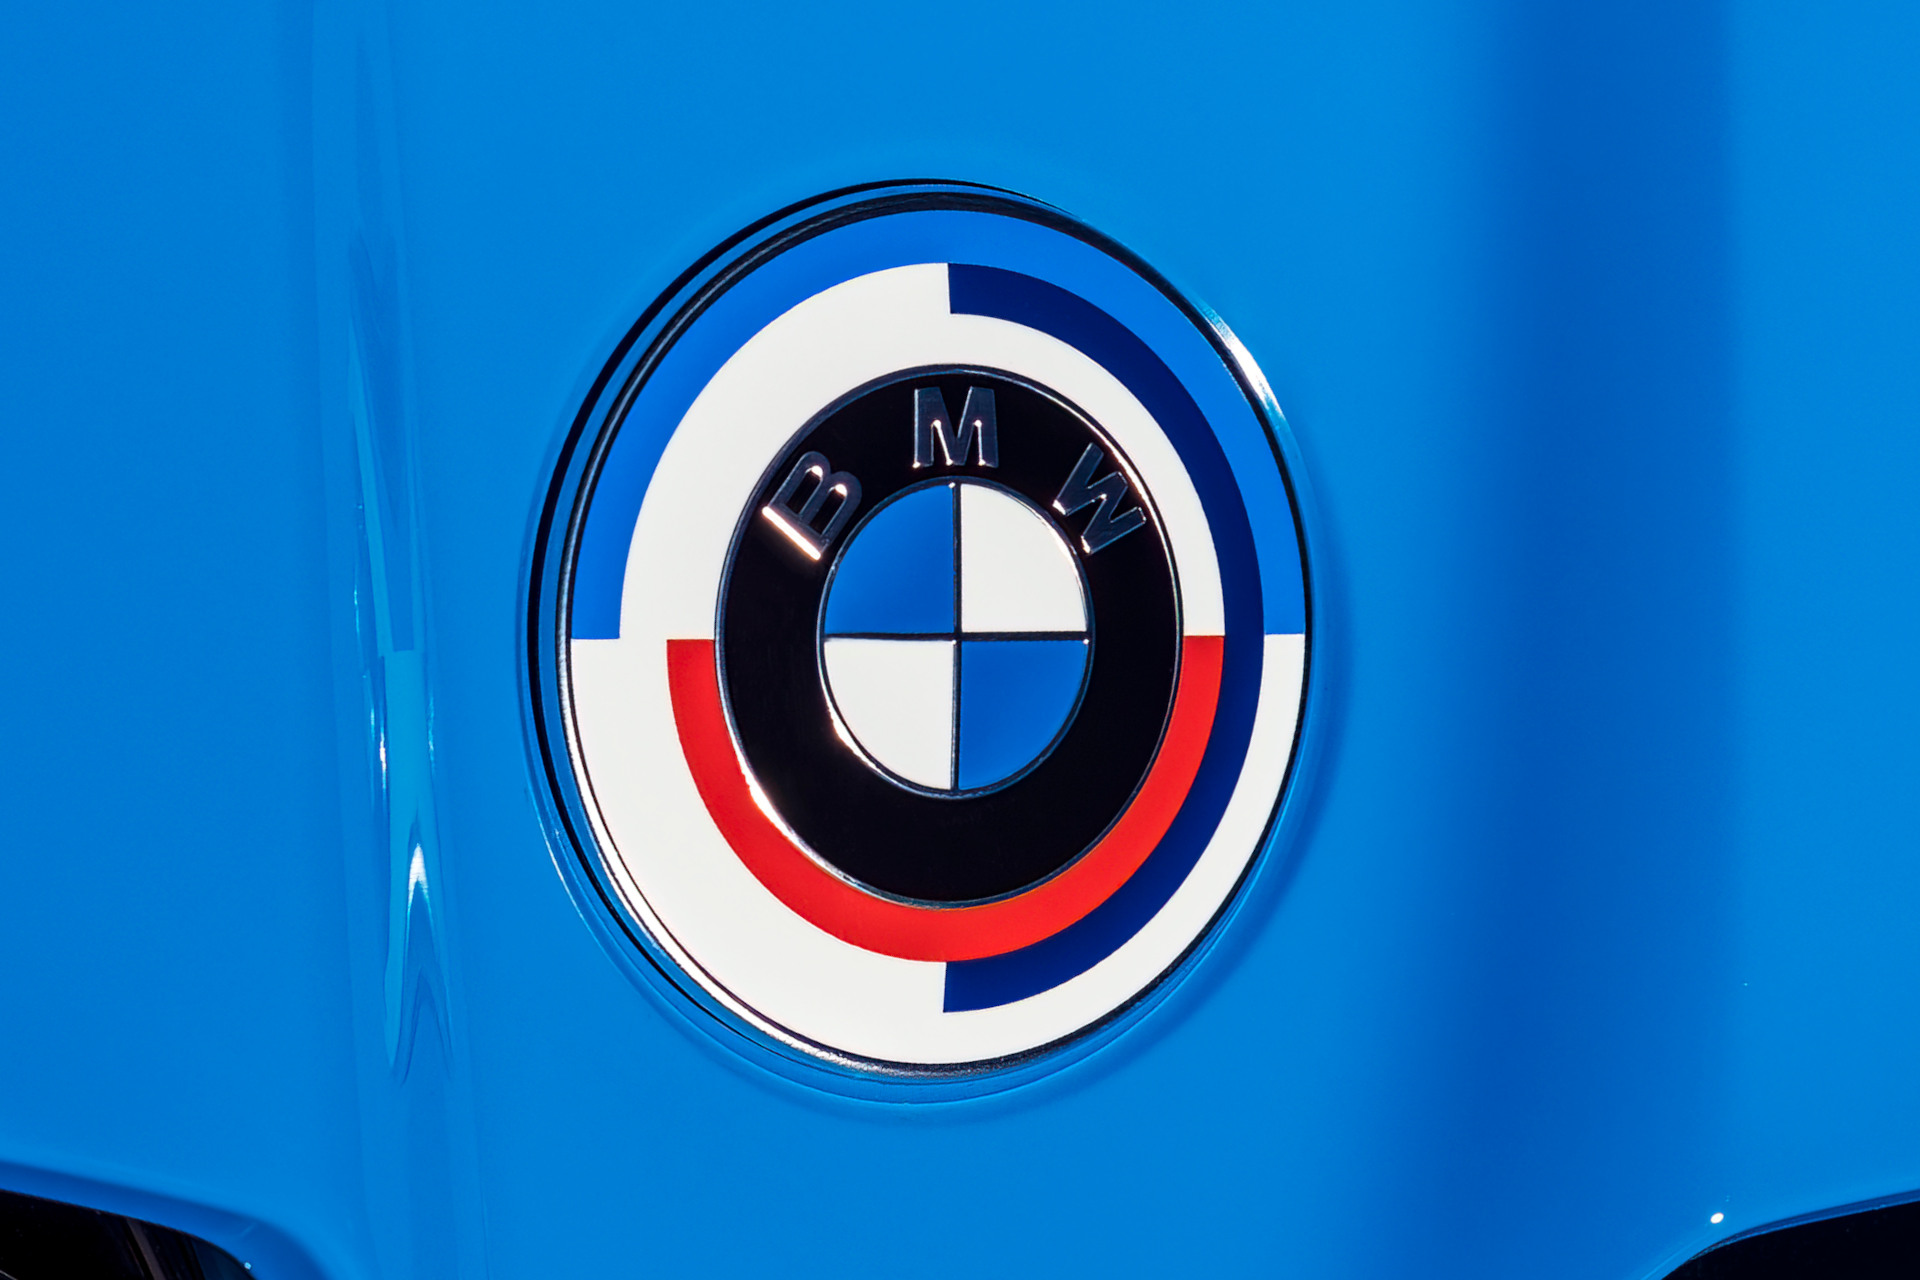 Kostenfreie Option: BMW M 50 Jahre Embleme im Konfigurator